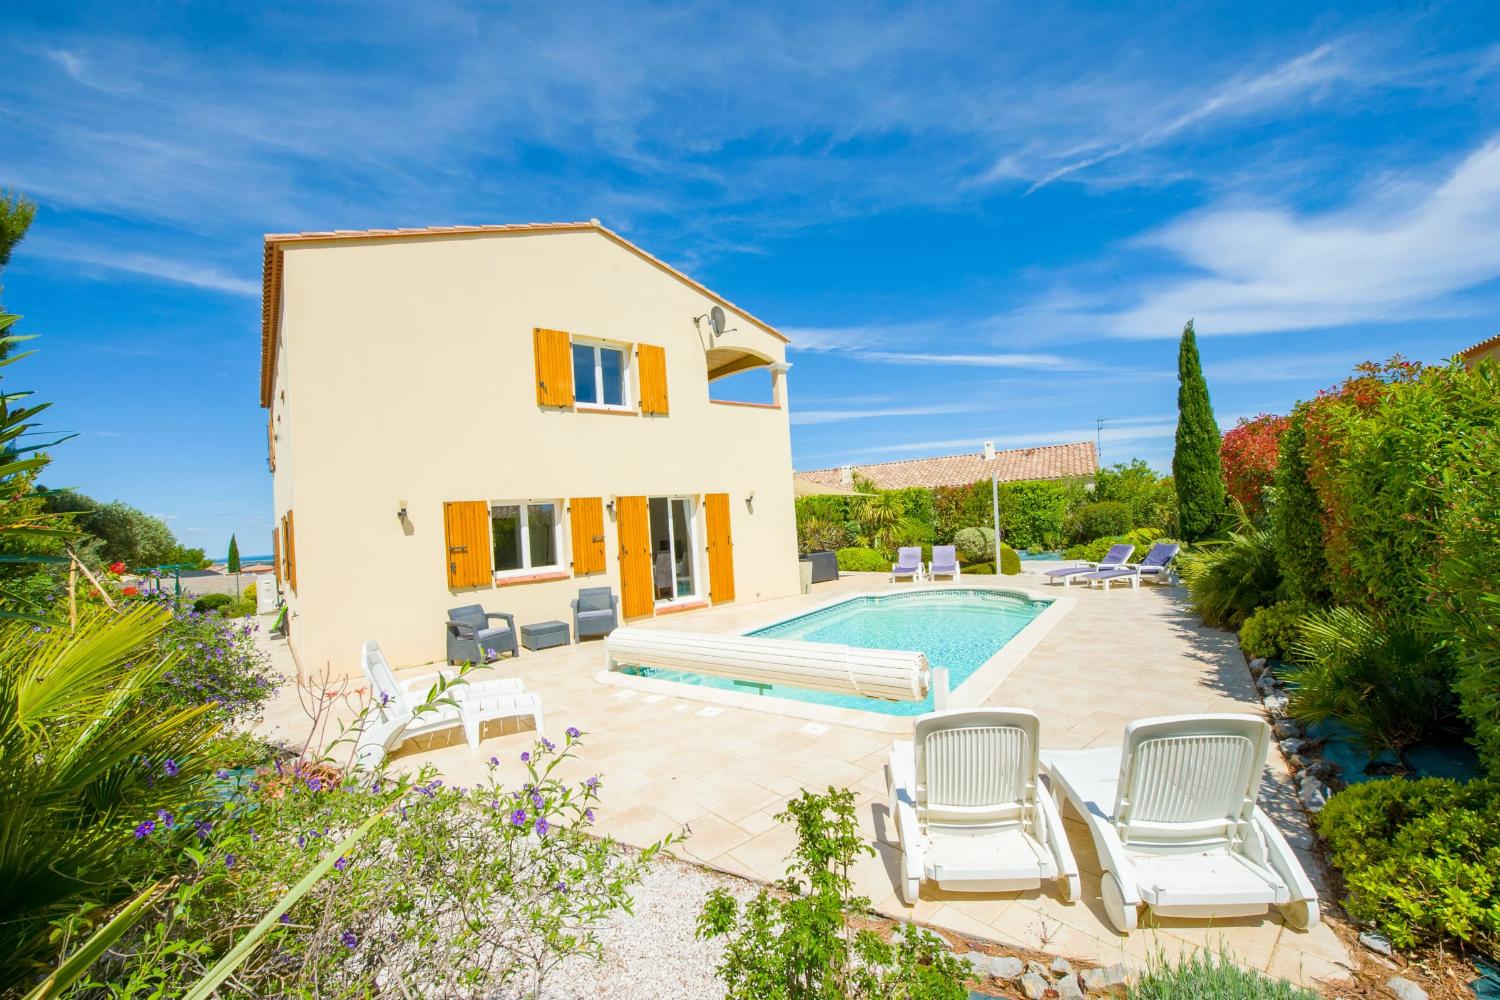 Villa de vacances dans le sud de la France avec piscine privée chauffée